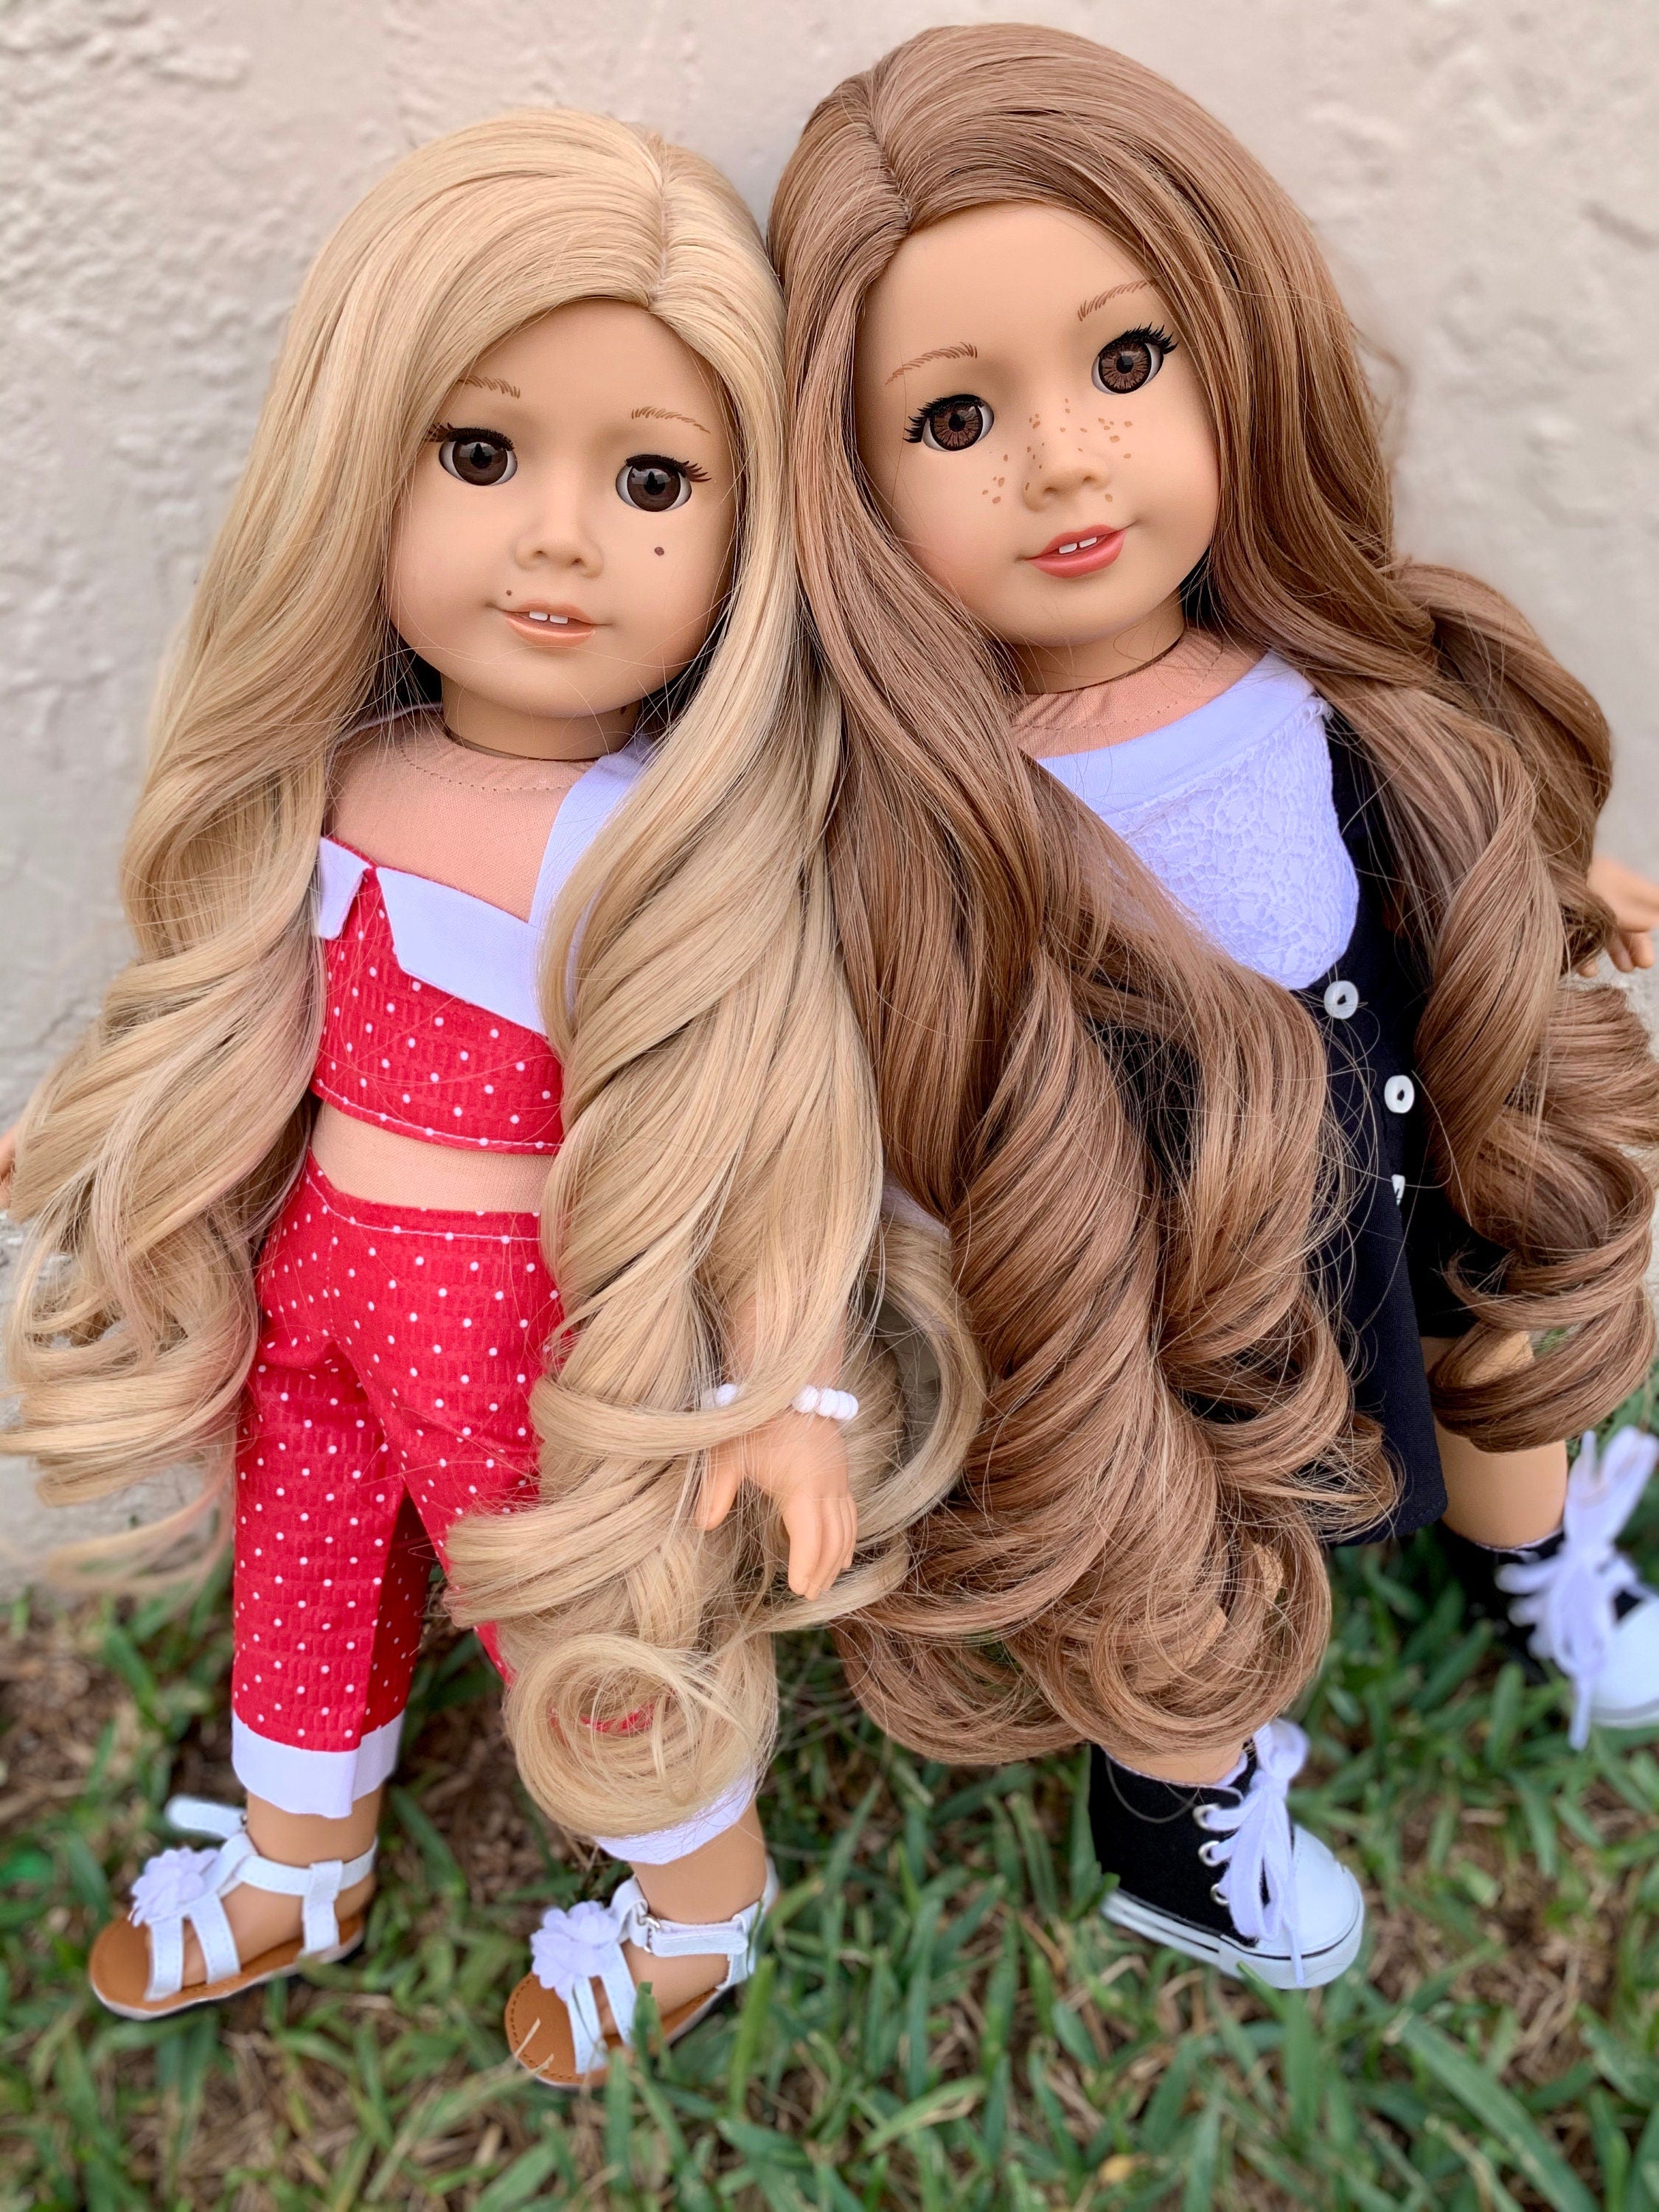 Custom doll wig for 18" American Girl Dolls - Heat Safe - Tangle Resistant - fits 10-11" head size of 18" dolls OG Blythe BJD Gotz Blonde